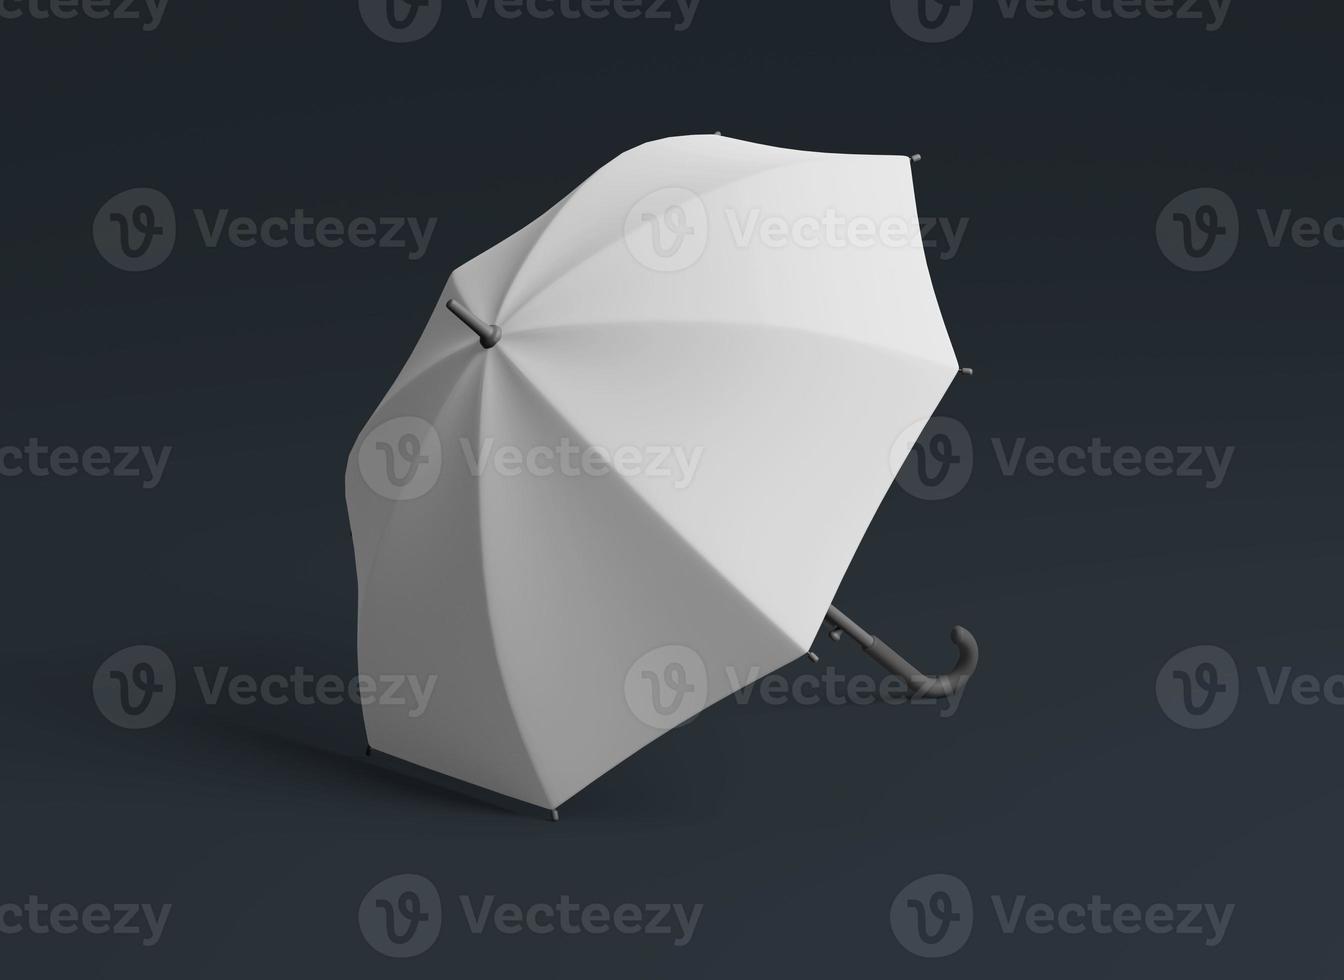 Regenschirm Attrappe, Lehrmodell, Simulation Vorlage mit Kopieren Raum zum Ihre Logo oder Grafik Design foto